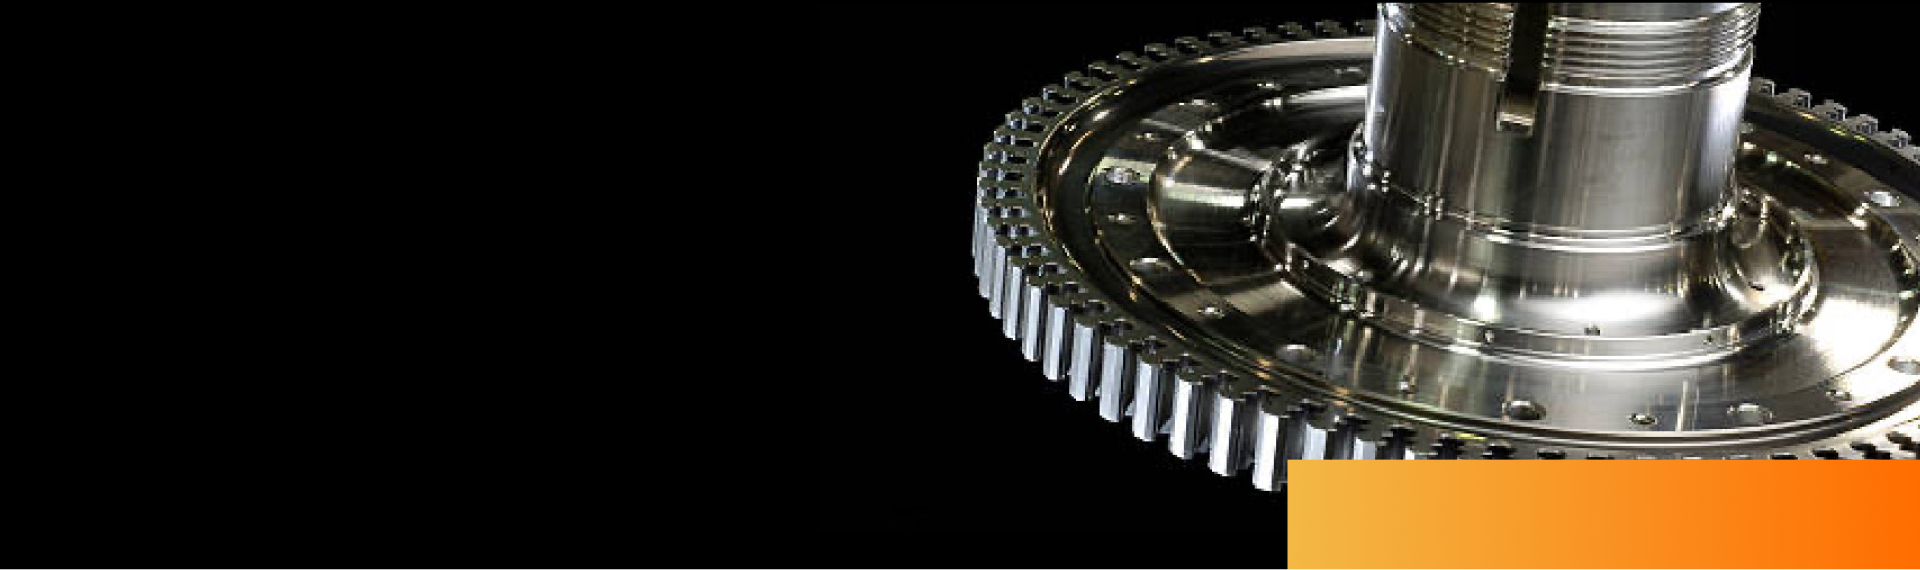 A gear wheel in tool steel